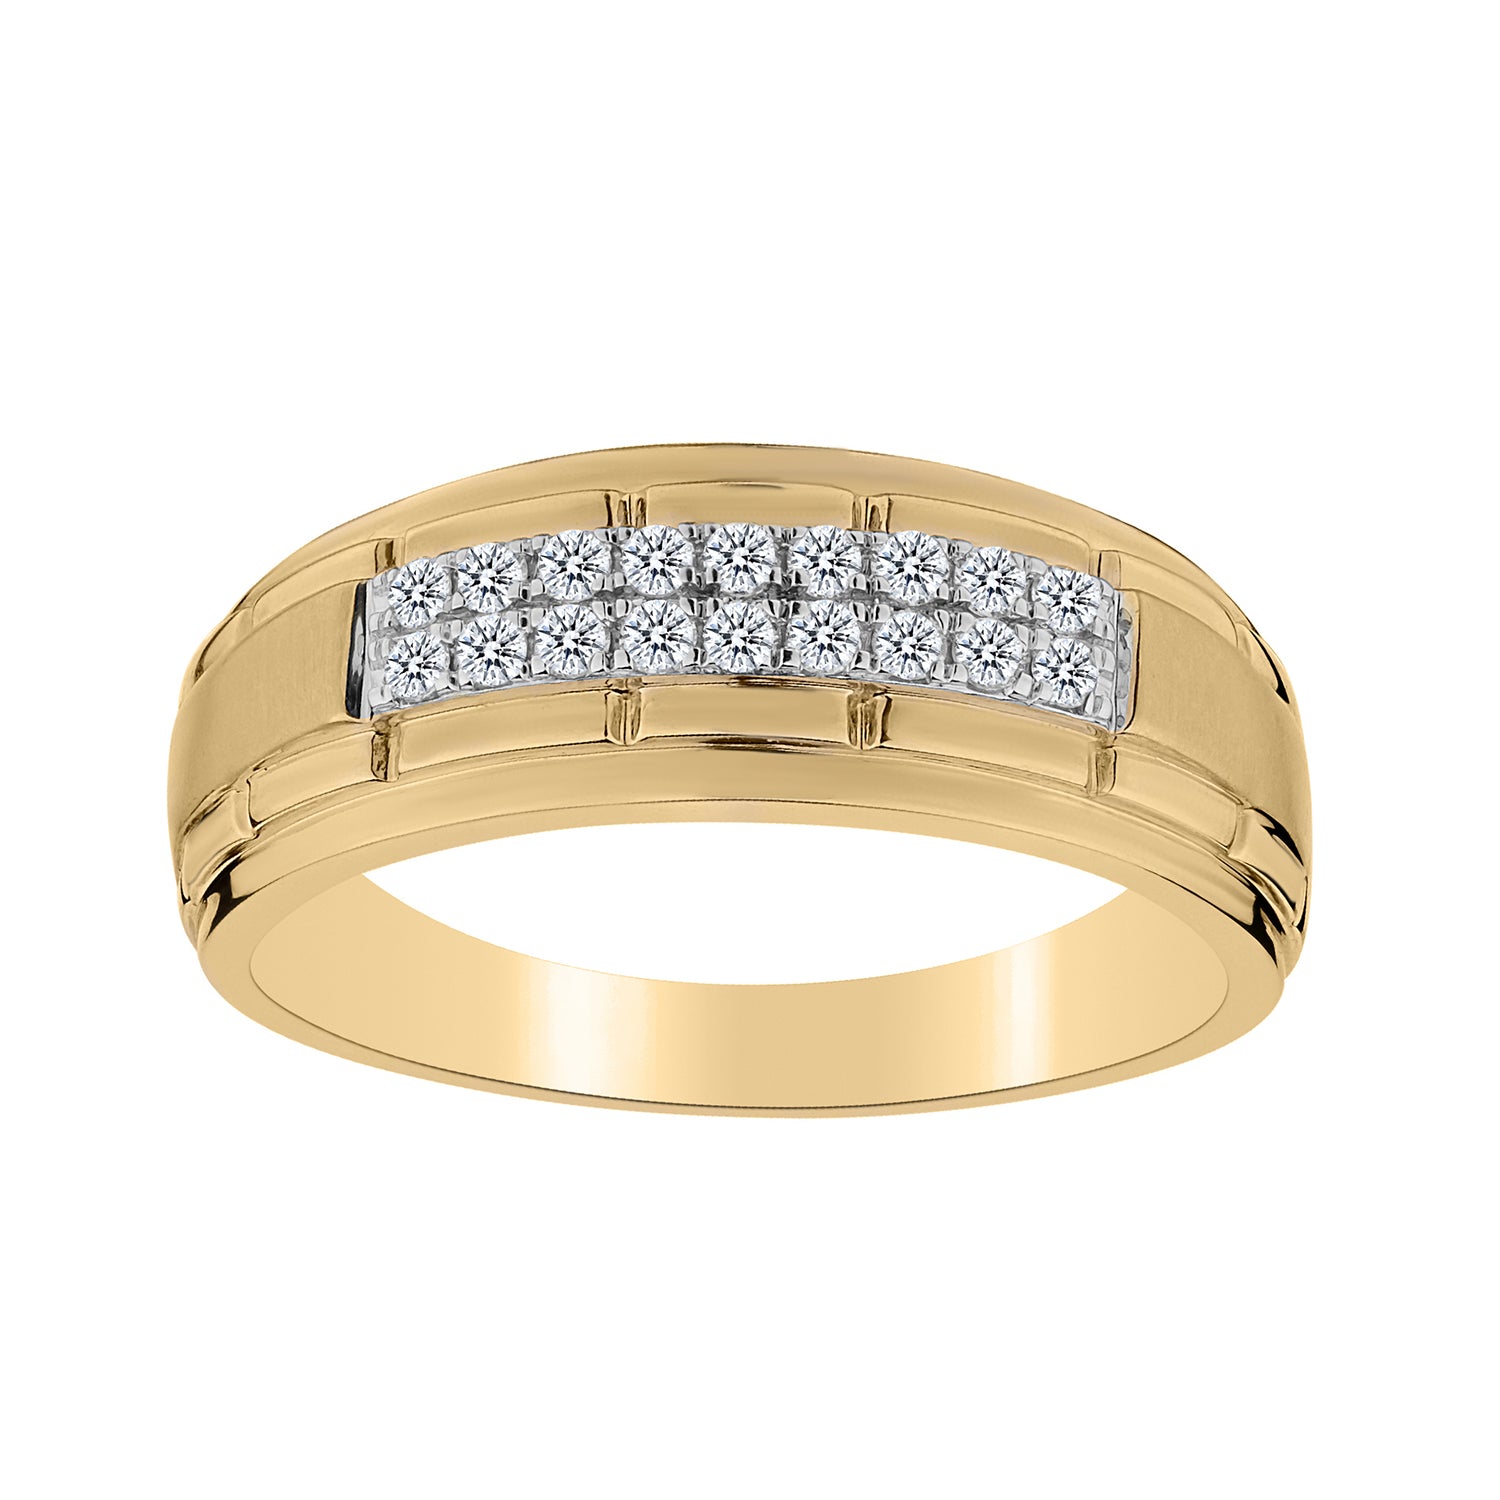 .25 Carat of Diamonds Gentleman's Ring, 10kt Yellow Gold...................NOW